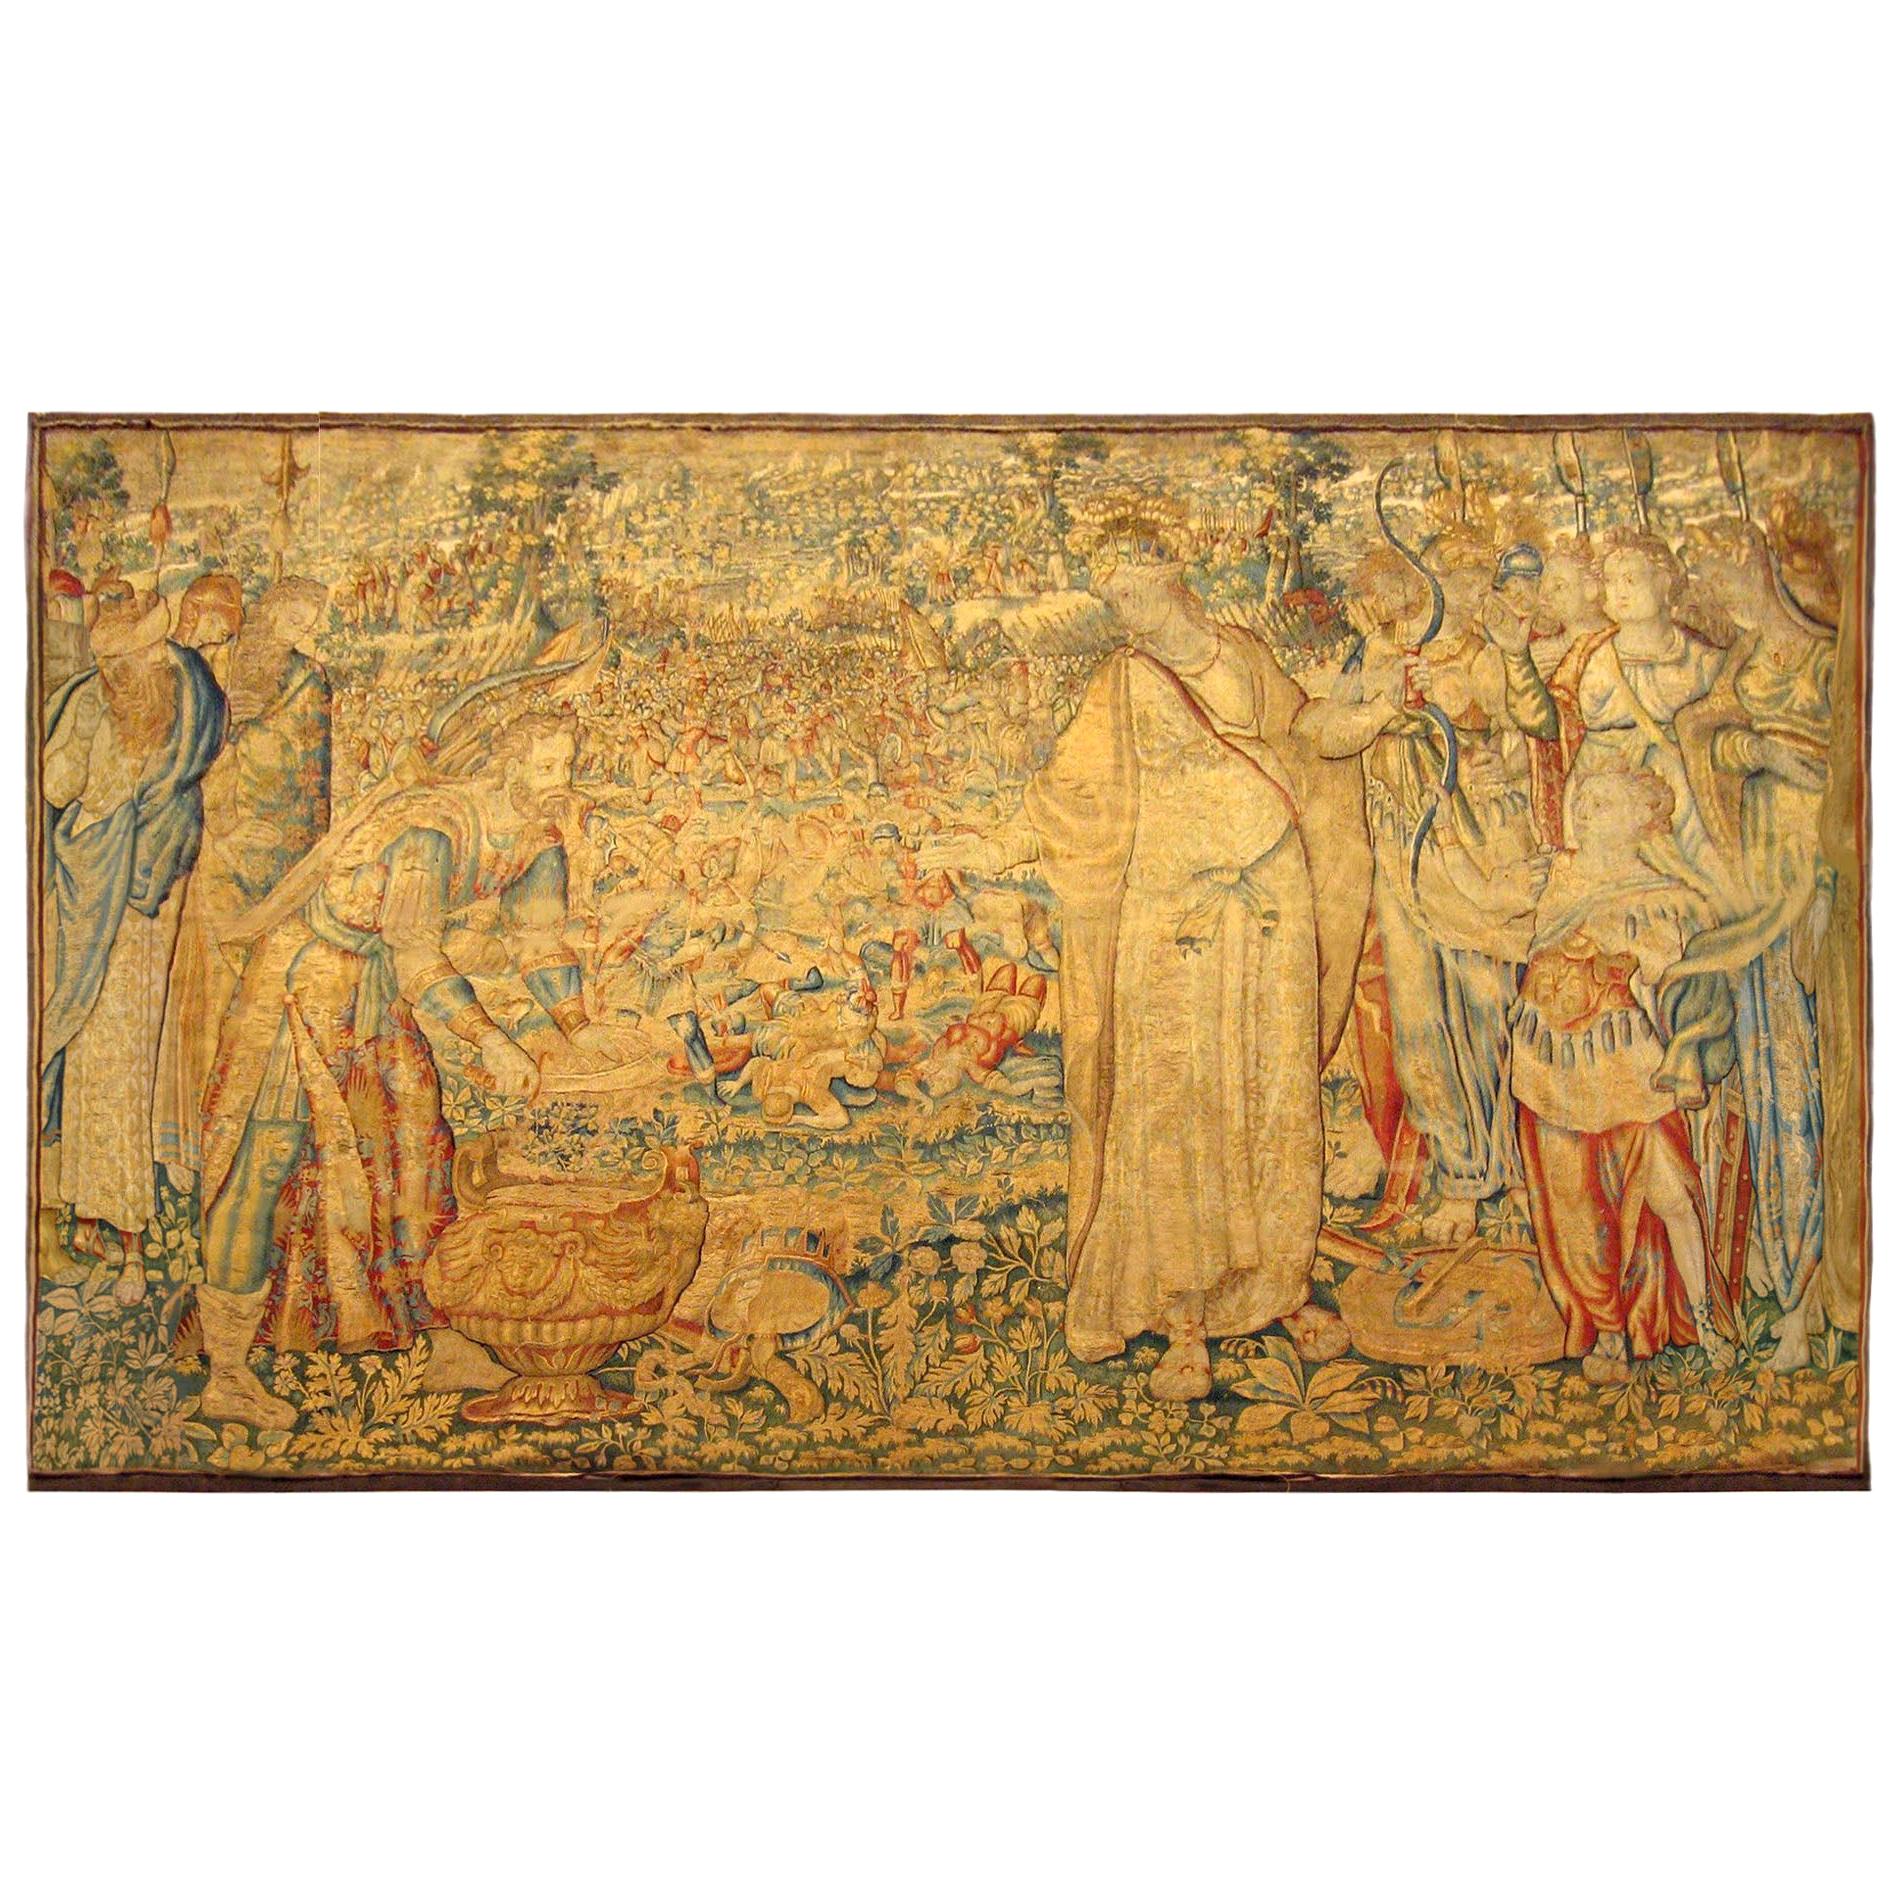 Flämischer historischer Wandteppich aus dem 16. Jahrhundert, mit dem Sieg der Tomyris